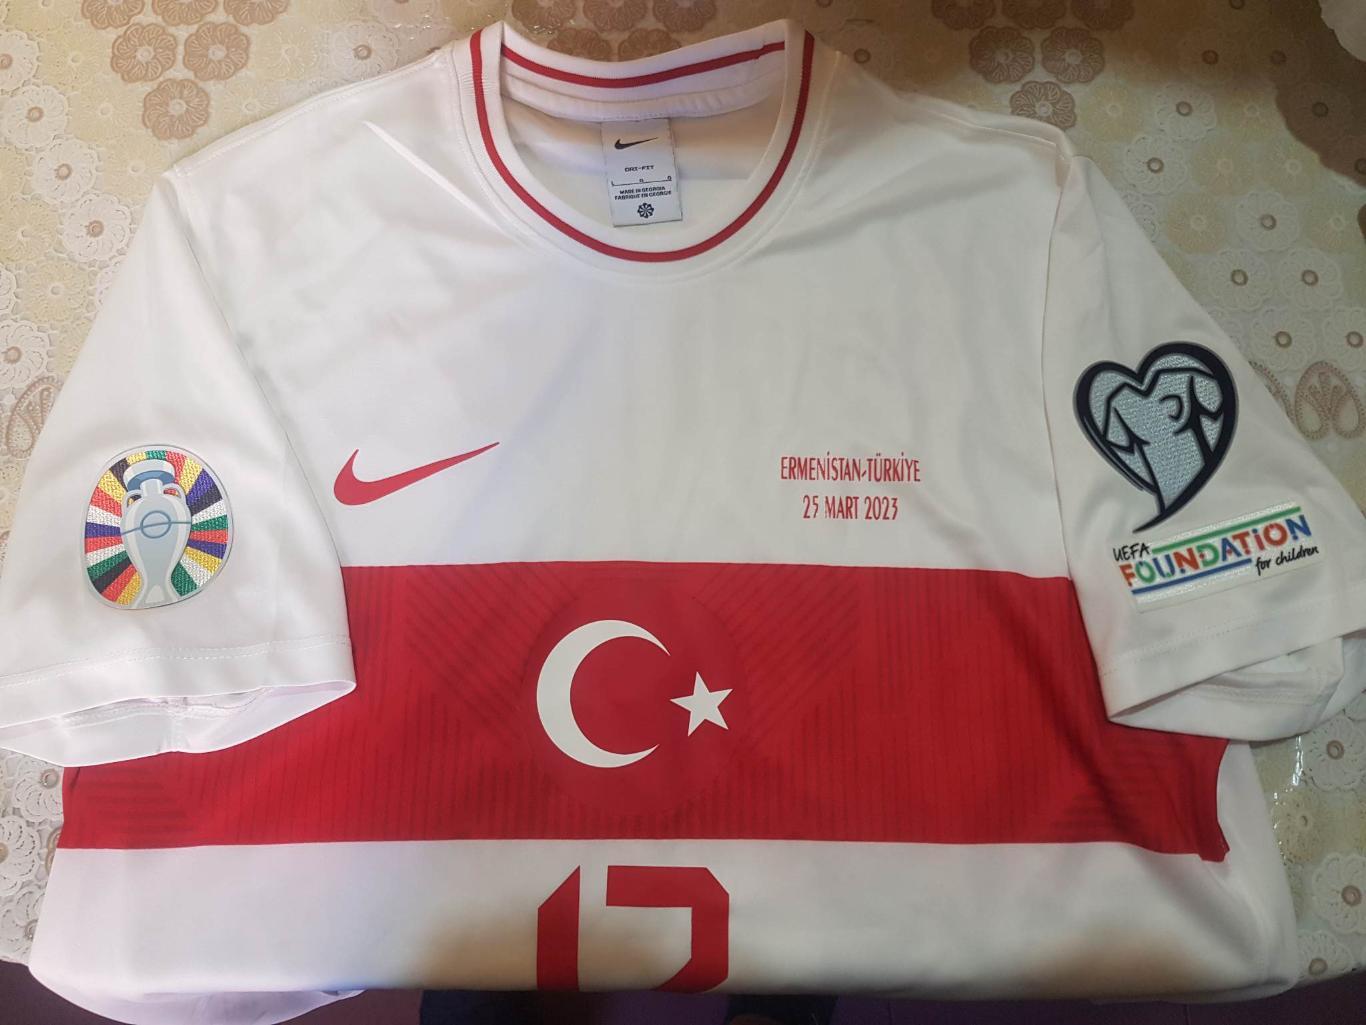 Официальная игровая майка сборной Турции 25.03.2023, N:17 2